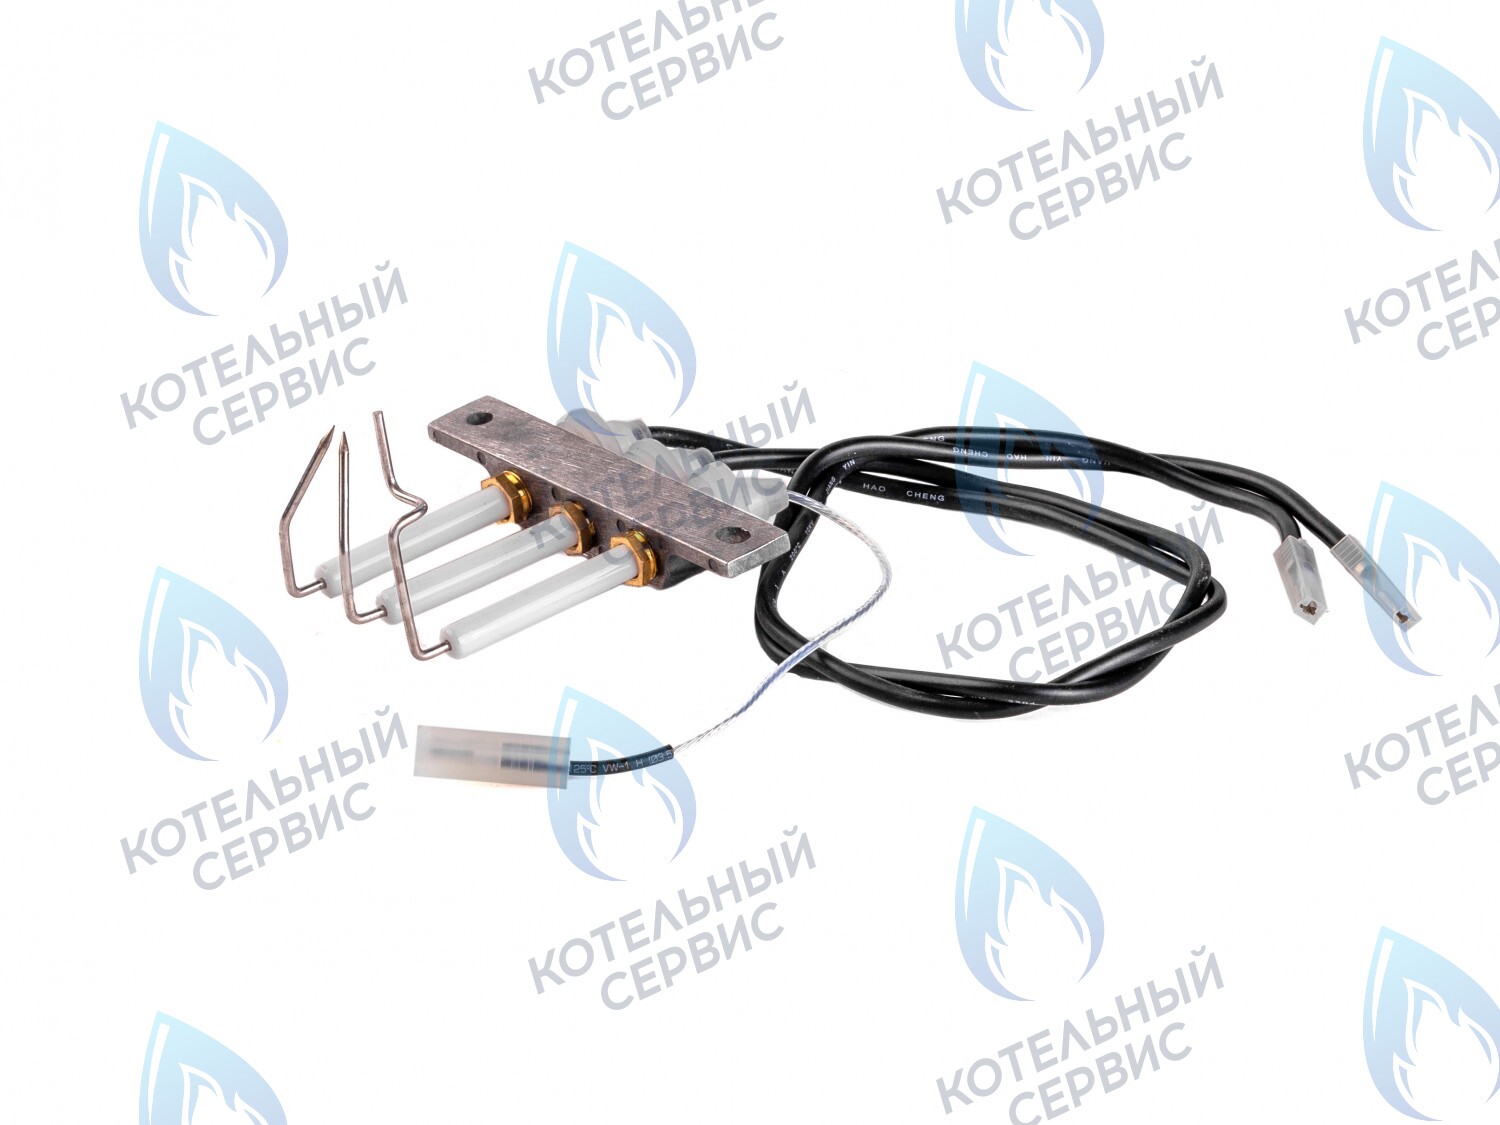  SF Комплект электродов с кабелями, электроды розжига и ионизации  (для GAZLUX, произведенных до 2012 г.) в Оренбурге	